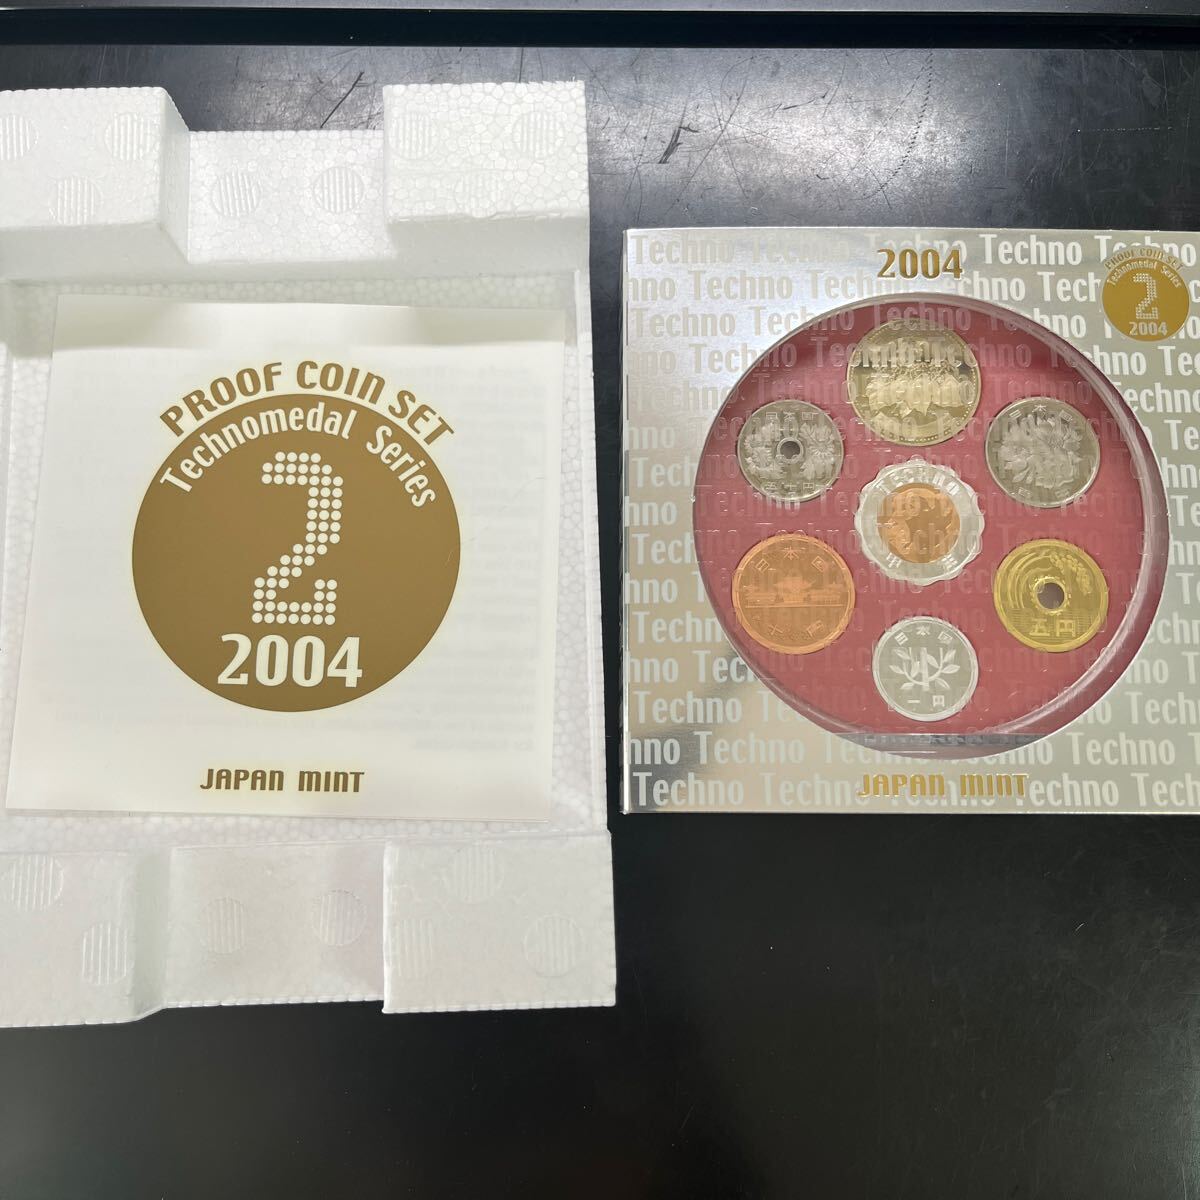 プルーフ貨幣セット 2004 テクノメダルシリーズ2 ミントセット 造幣局 貨幣セット ジャパンコインセット MINT 記念硬貨 の画像1